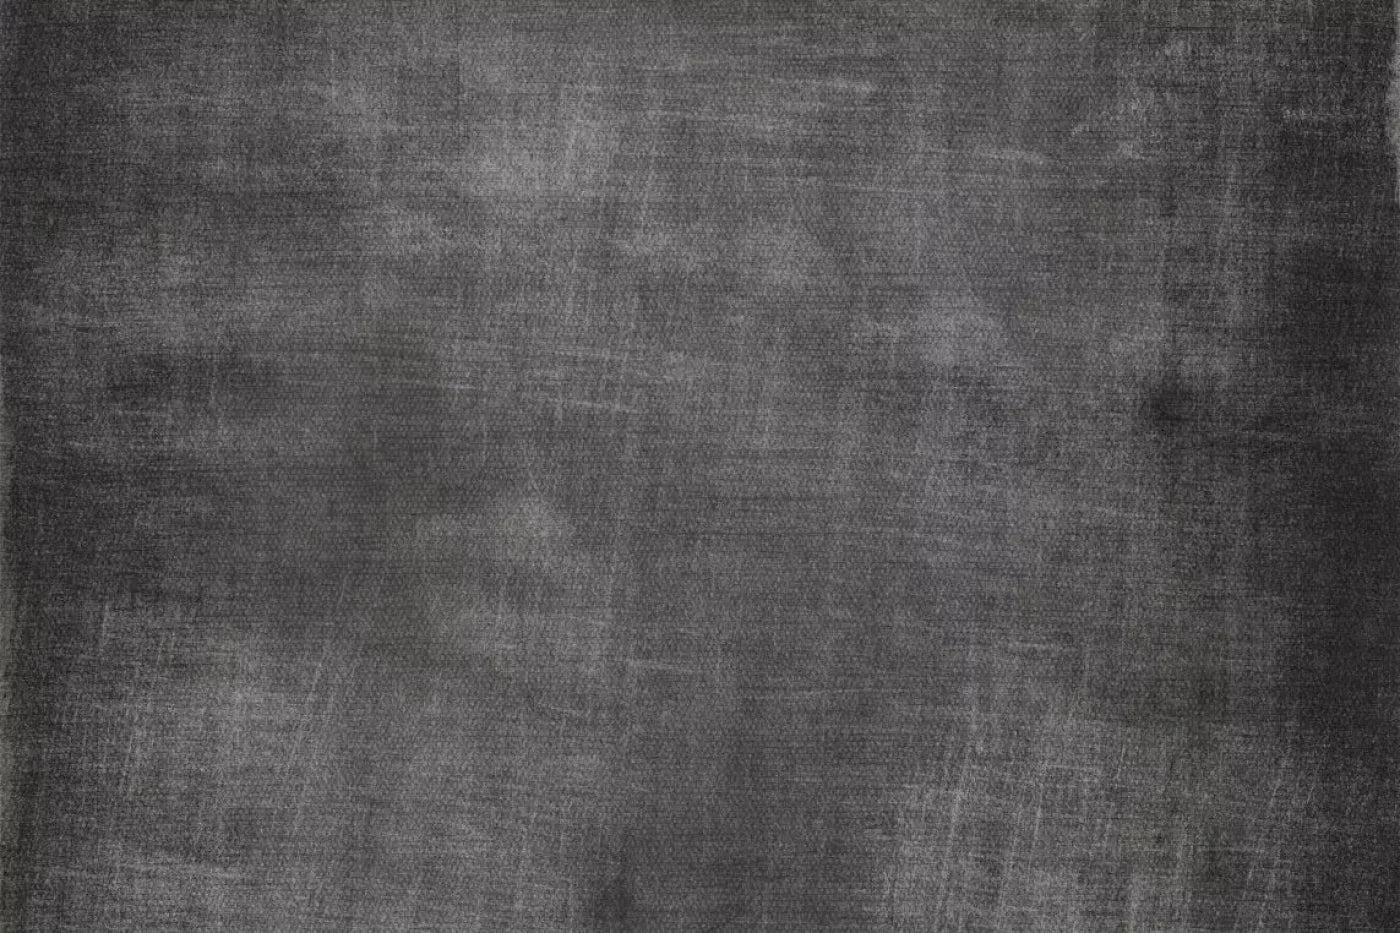 Blackboard 5X4 Rubbermat Floor ( 60 X 48 Inch ) Backdrop